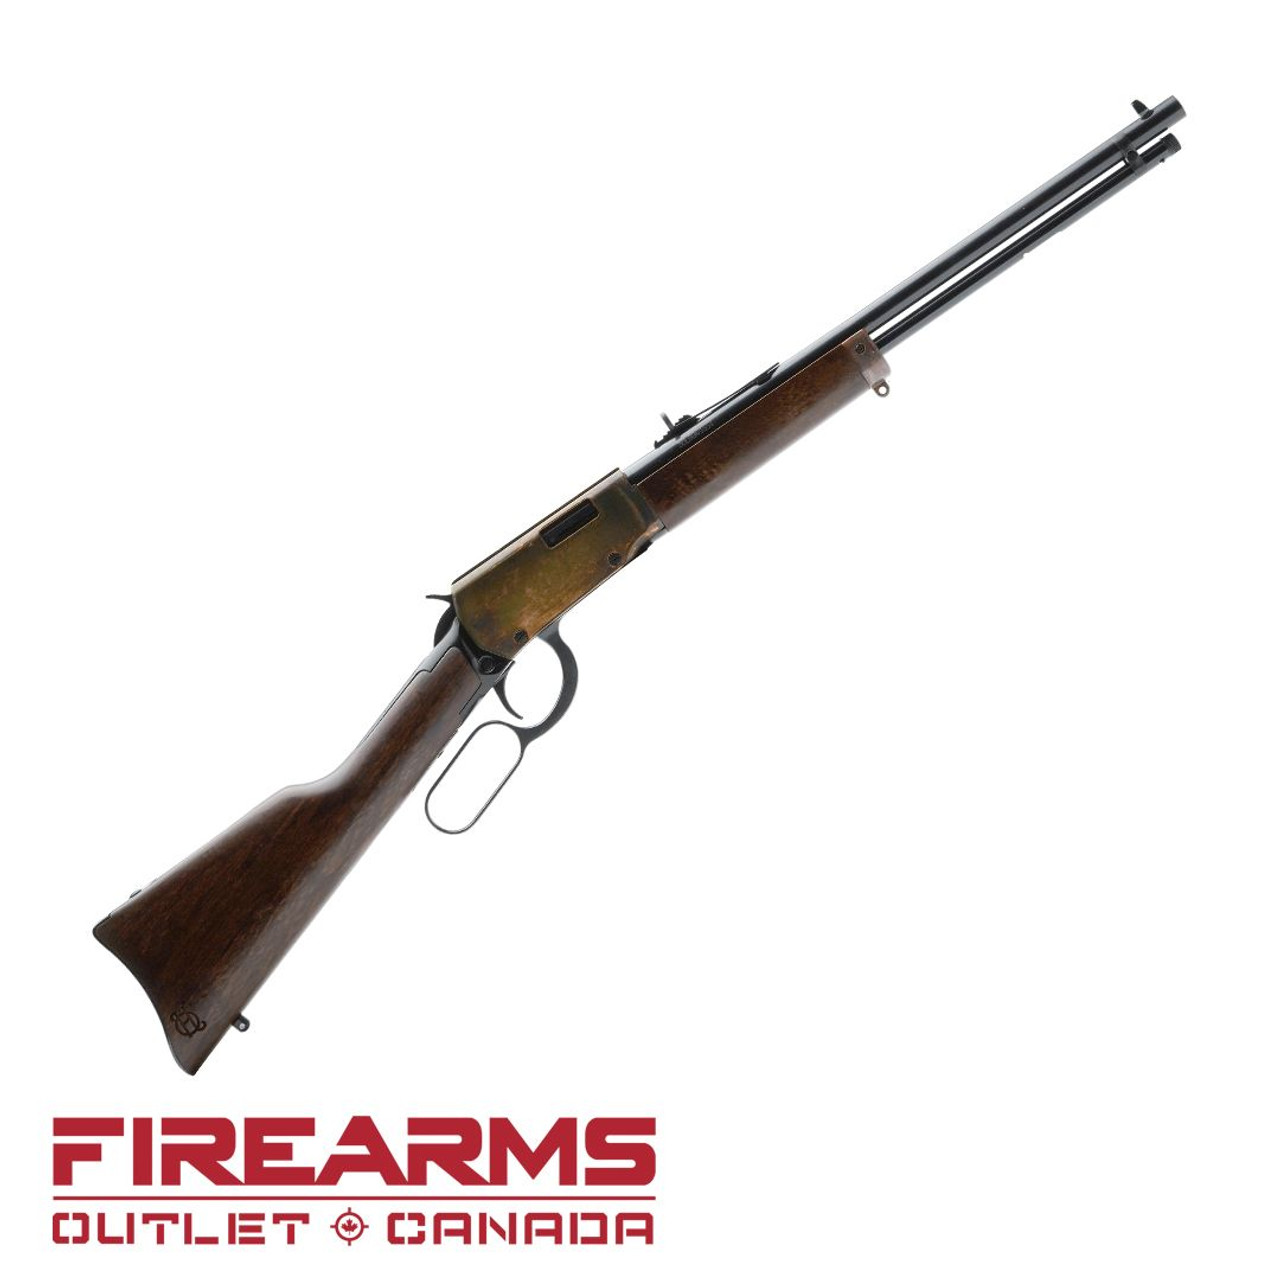 Heritage Arms Settler Carbine (Polished Black Oxide) - .22LR, 16.5", 6-Shot [STR22LCH16]